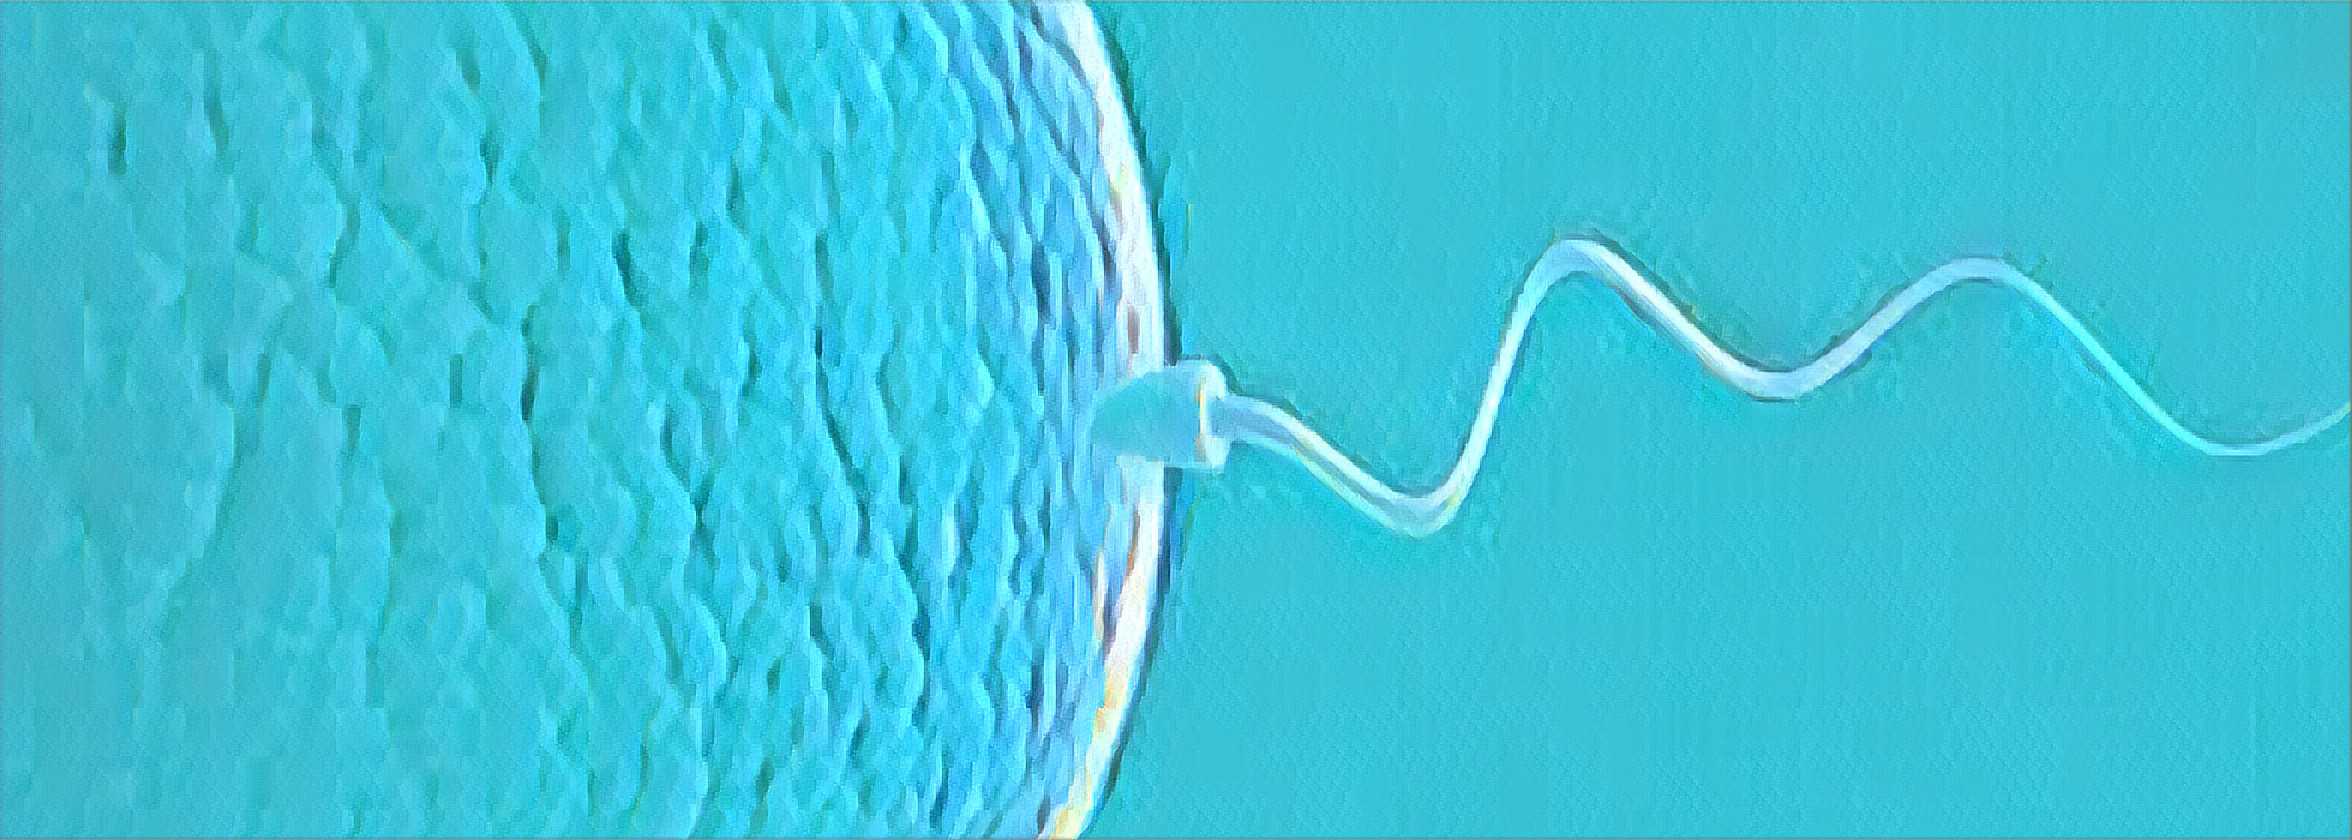 fazer para o especialista em infertilidade?